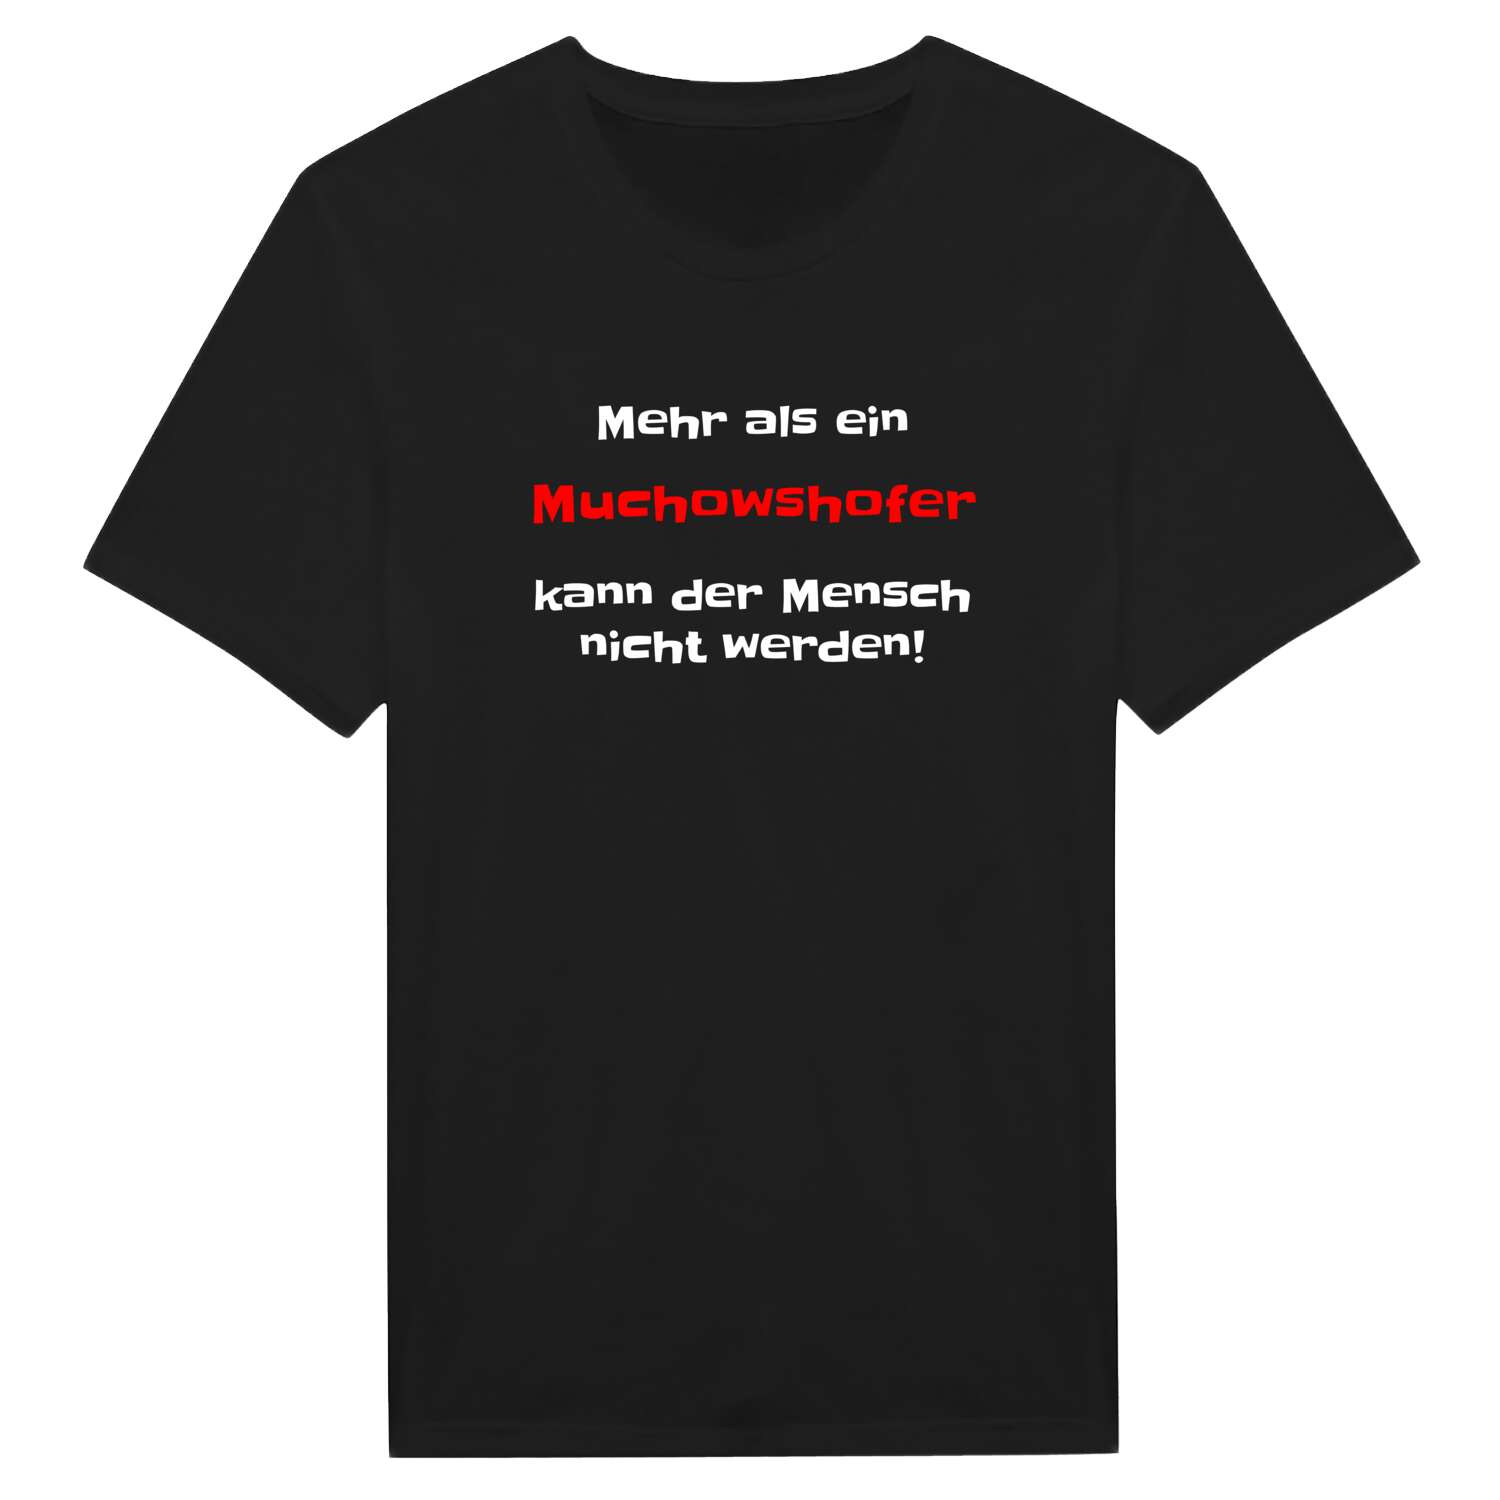 Muchowshof T-Shirt »Mehr als ein«